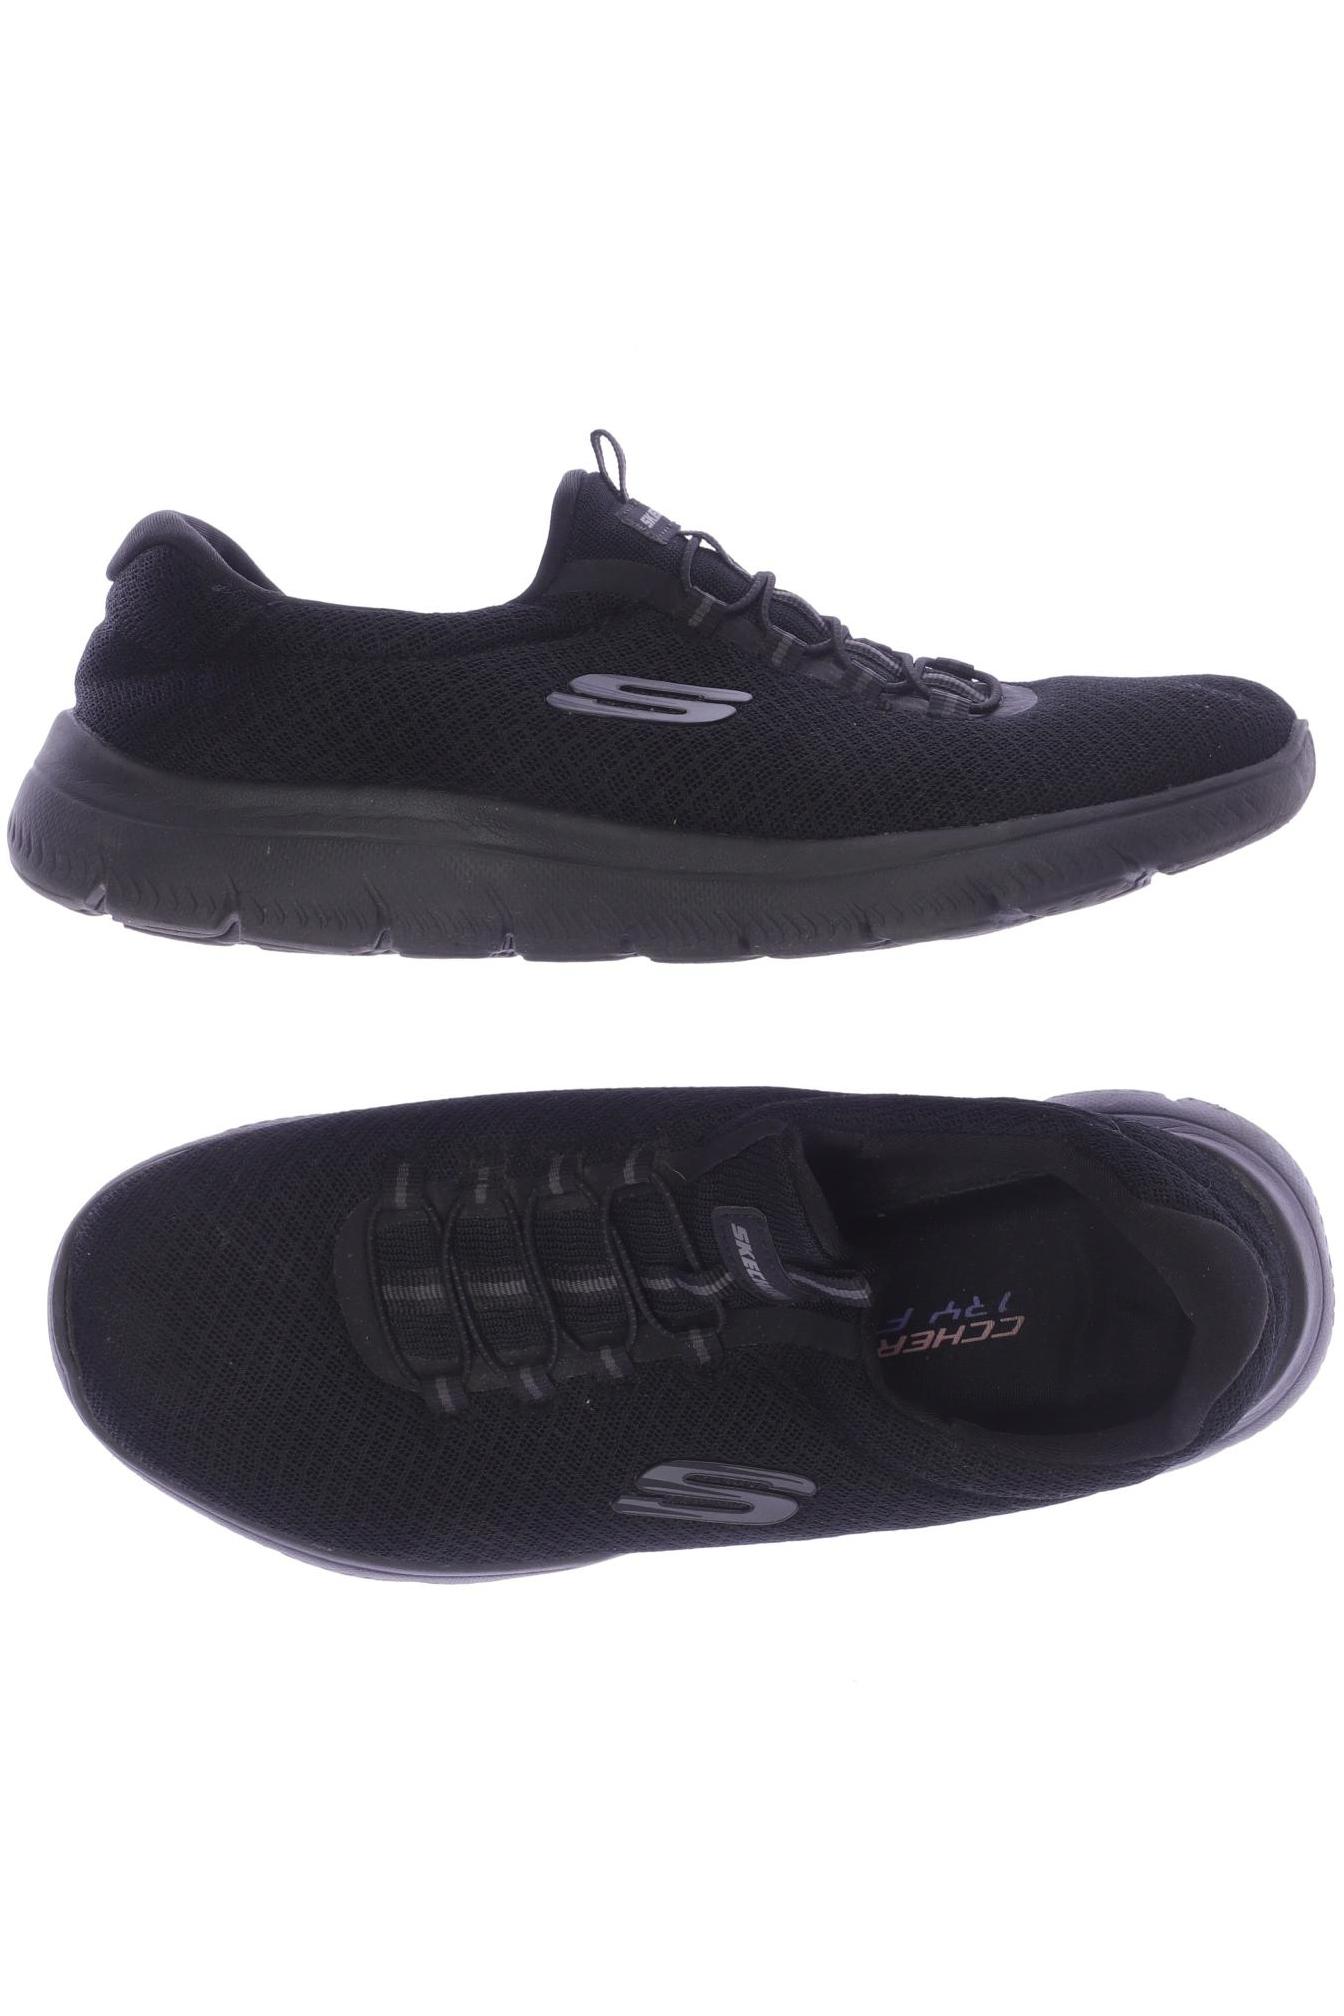 SKECHERS Damen Sneakers, schwarz von Skechers